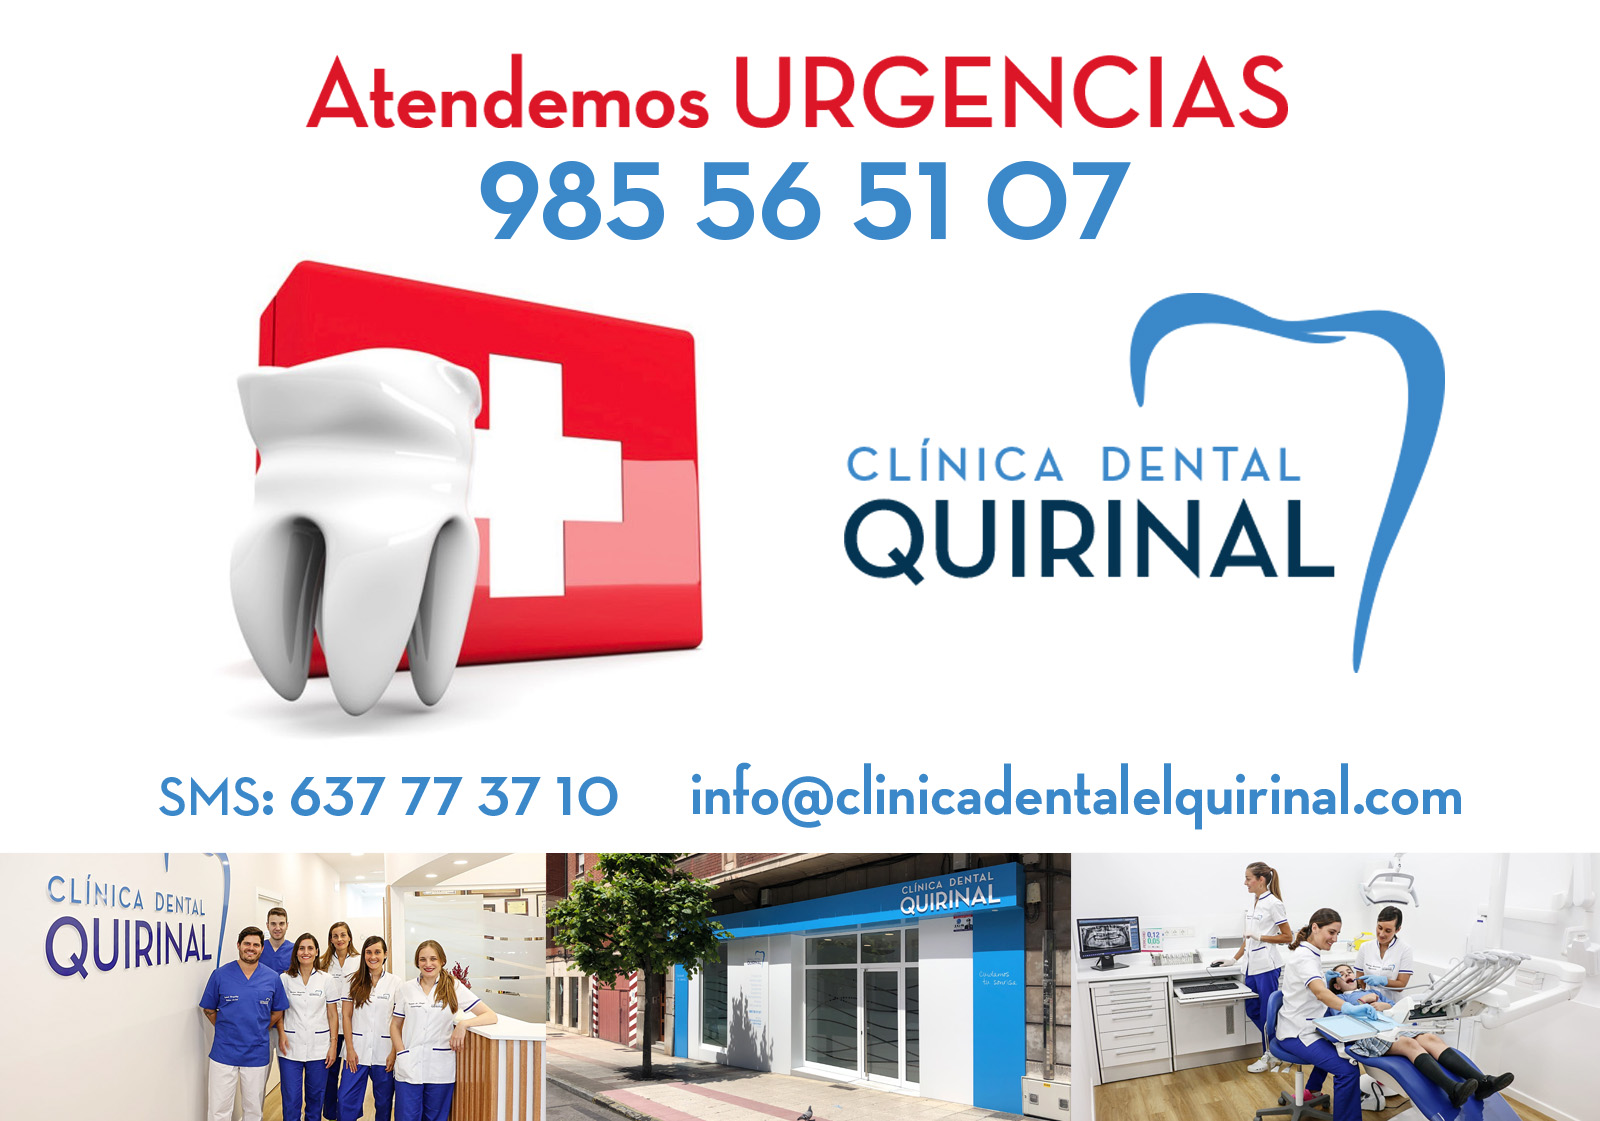 CLINICA DENTAL QUIRINAL en Avilés - ATENDEMOS URGENCIAS dentales COVID-19 Estado de Alarma